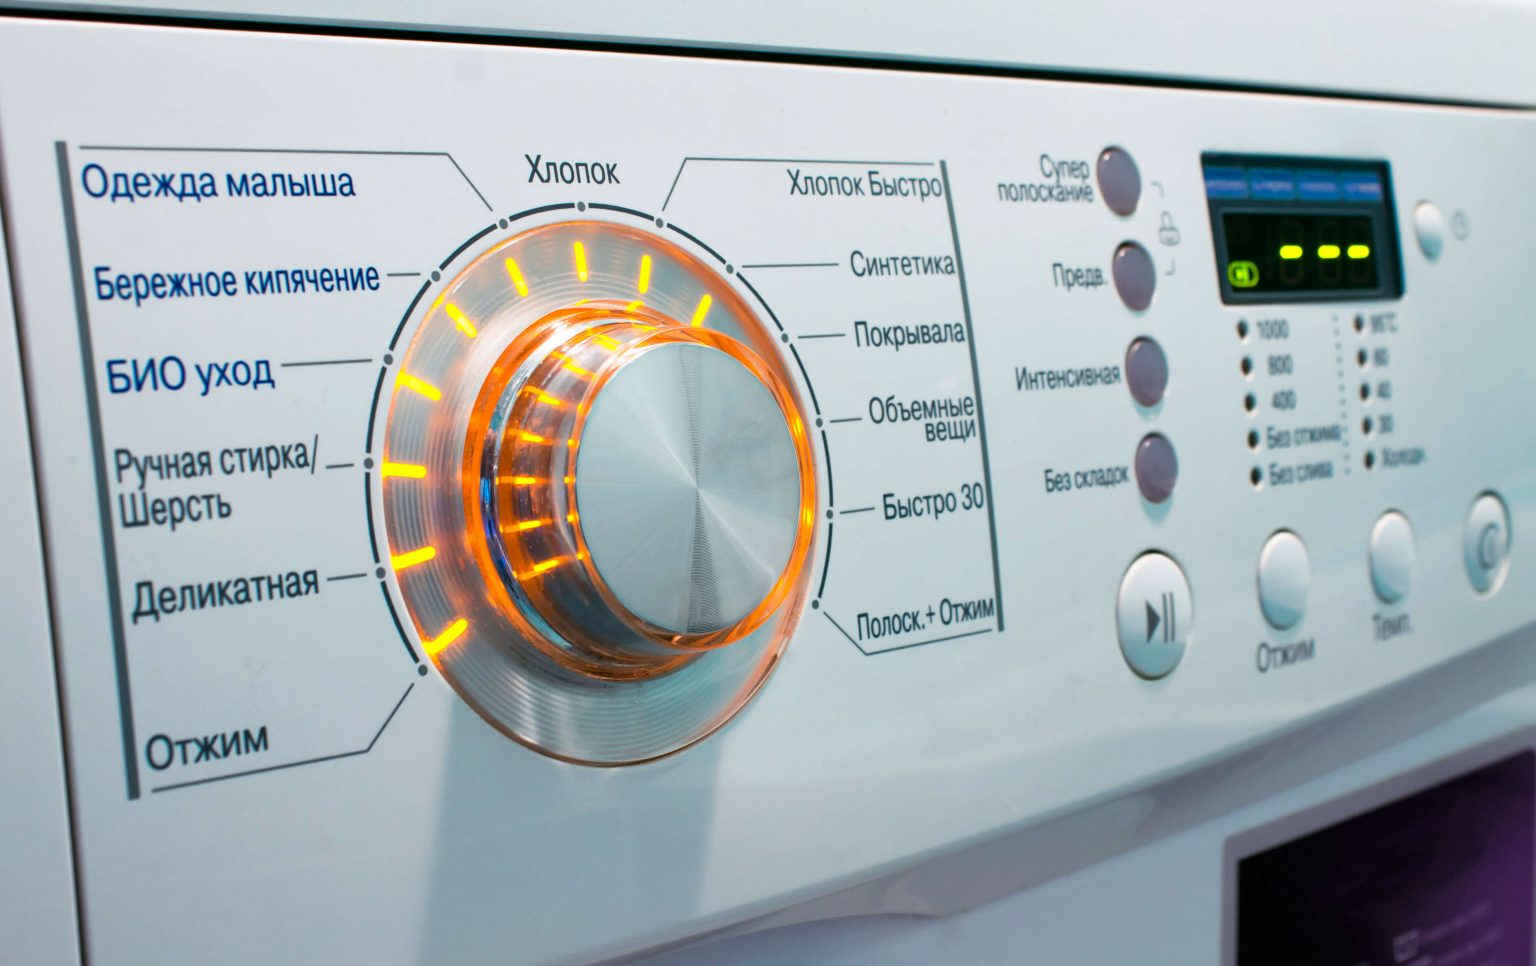 Признаки засорения фильтра в стиральной машине